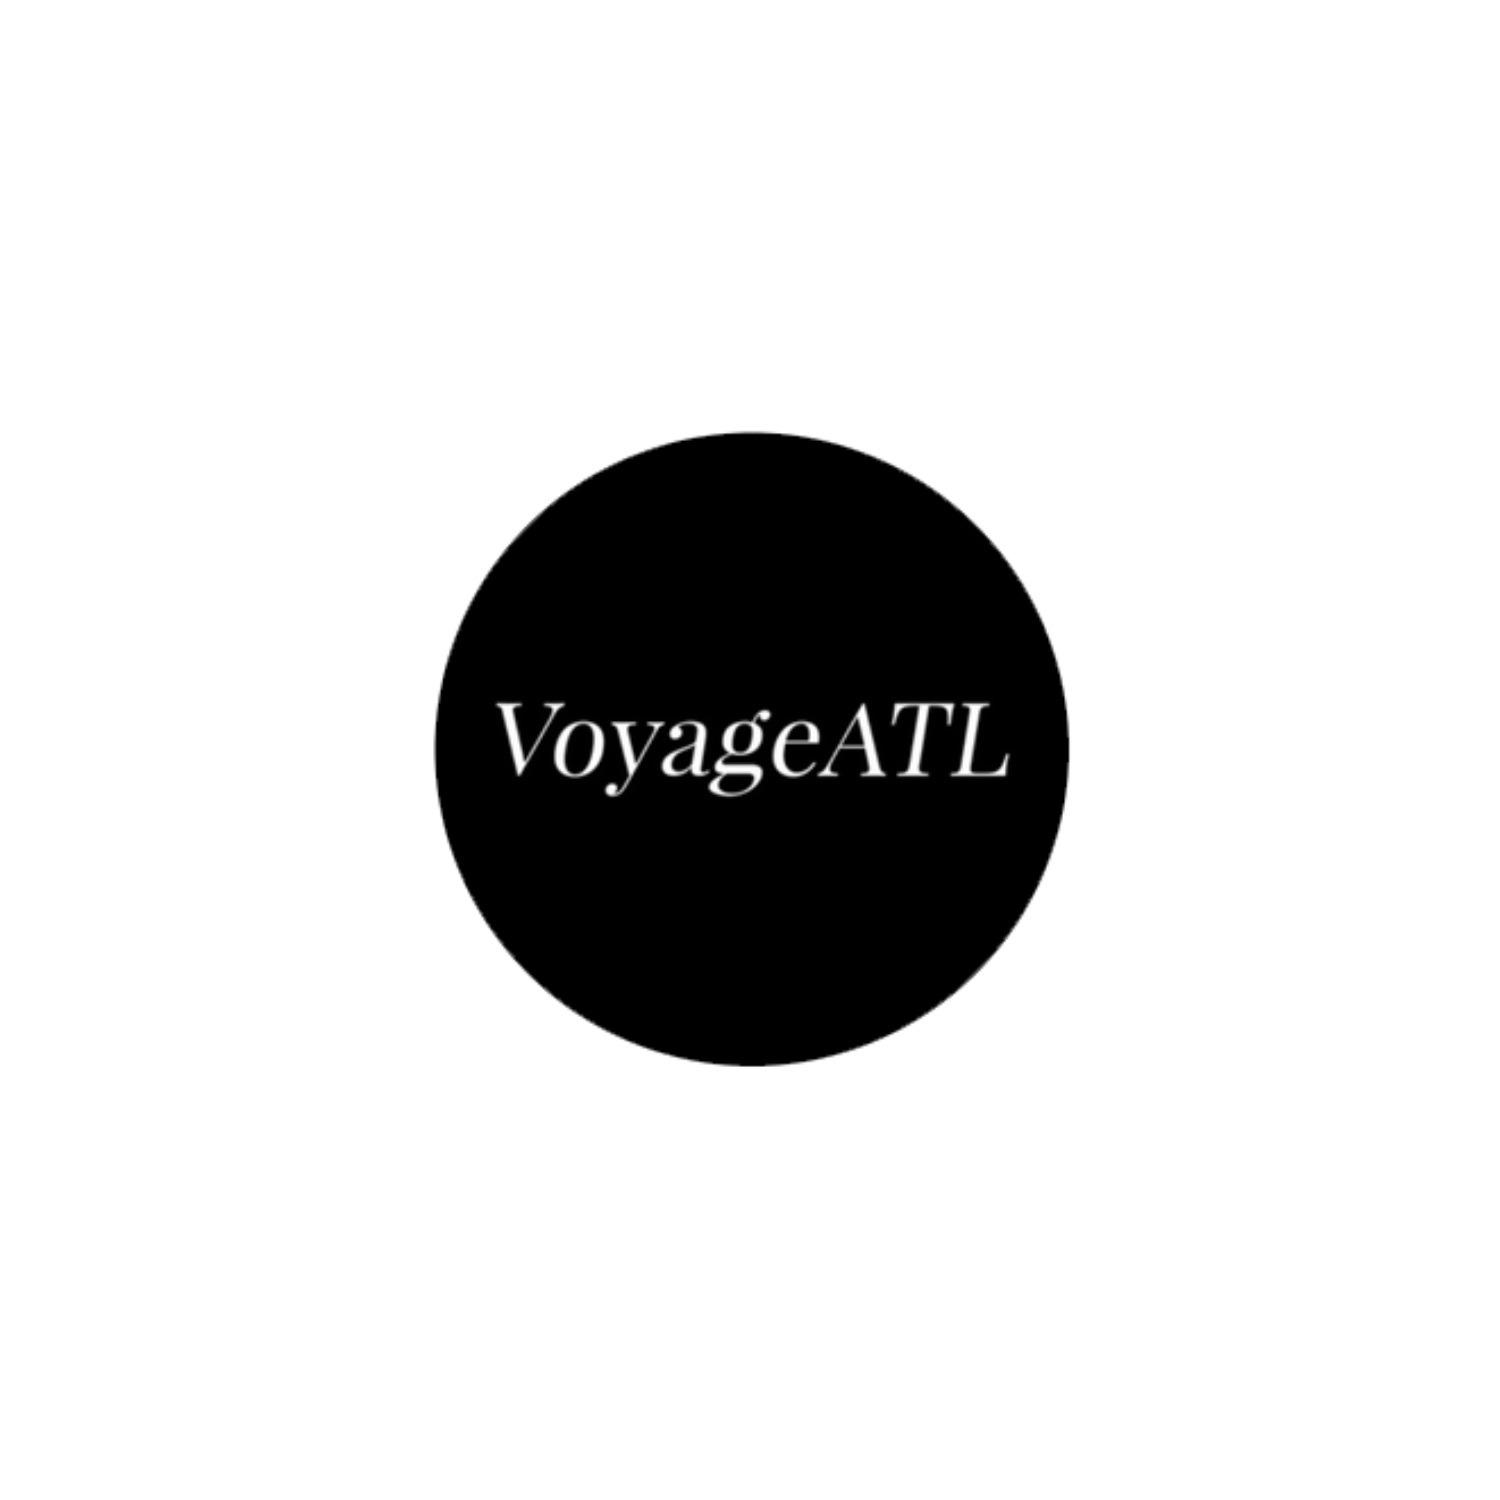 Voyage atl logo Curtis J. Williams